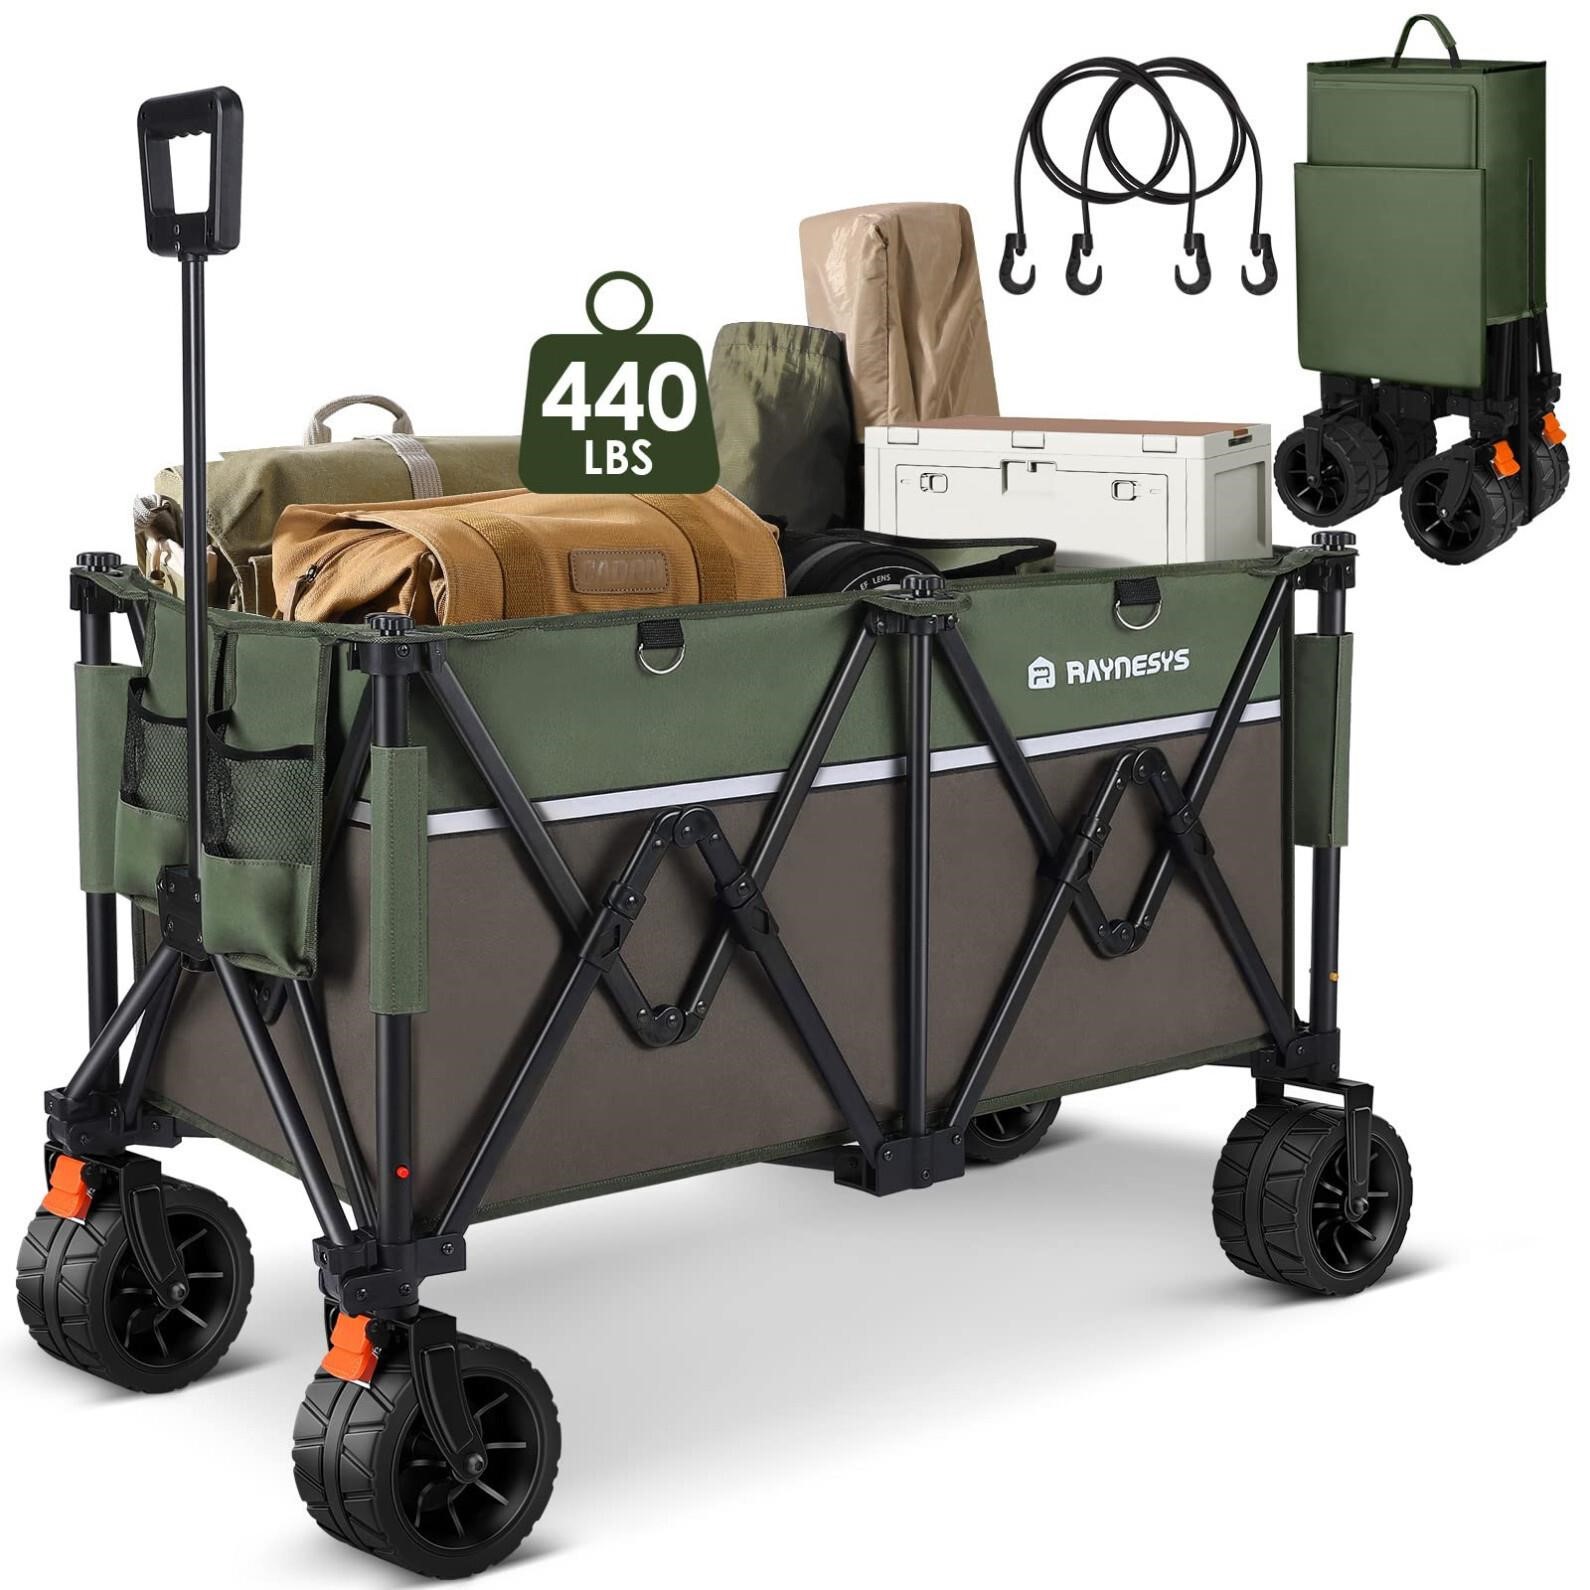 Raynesys Wagons Carts 440 lbs Heavy Duty Foldable